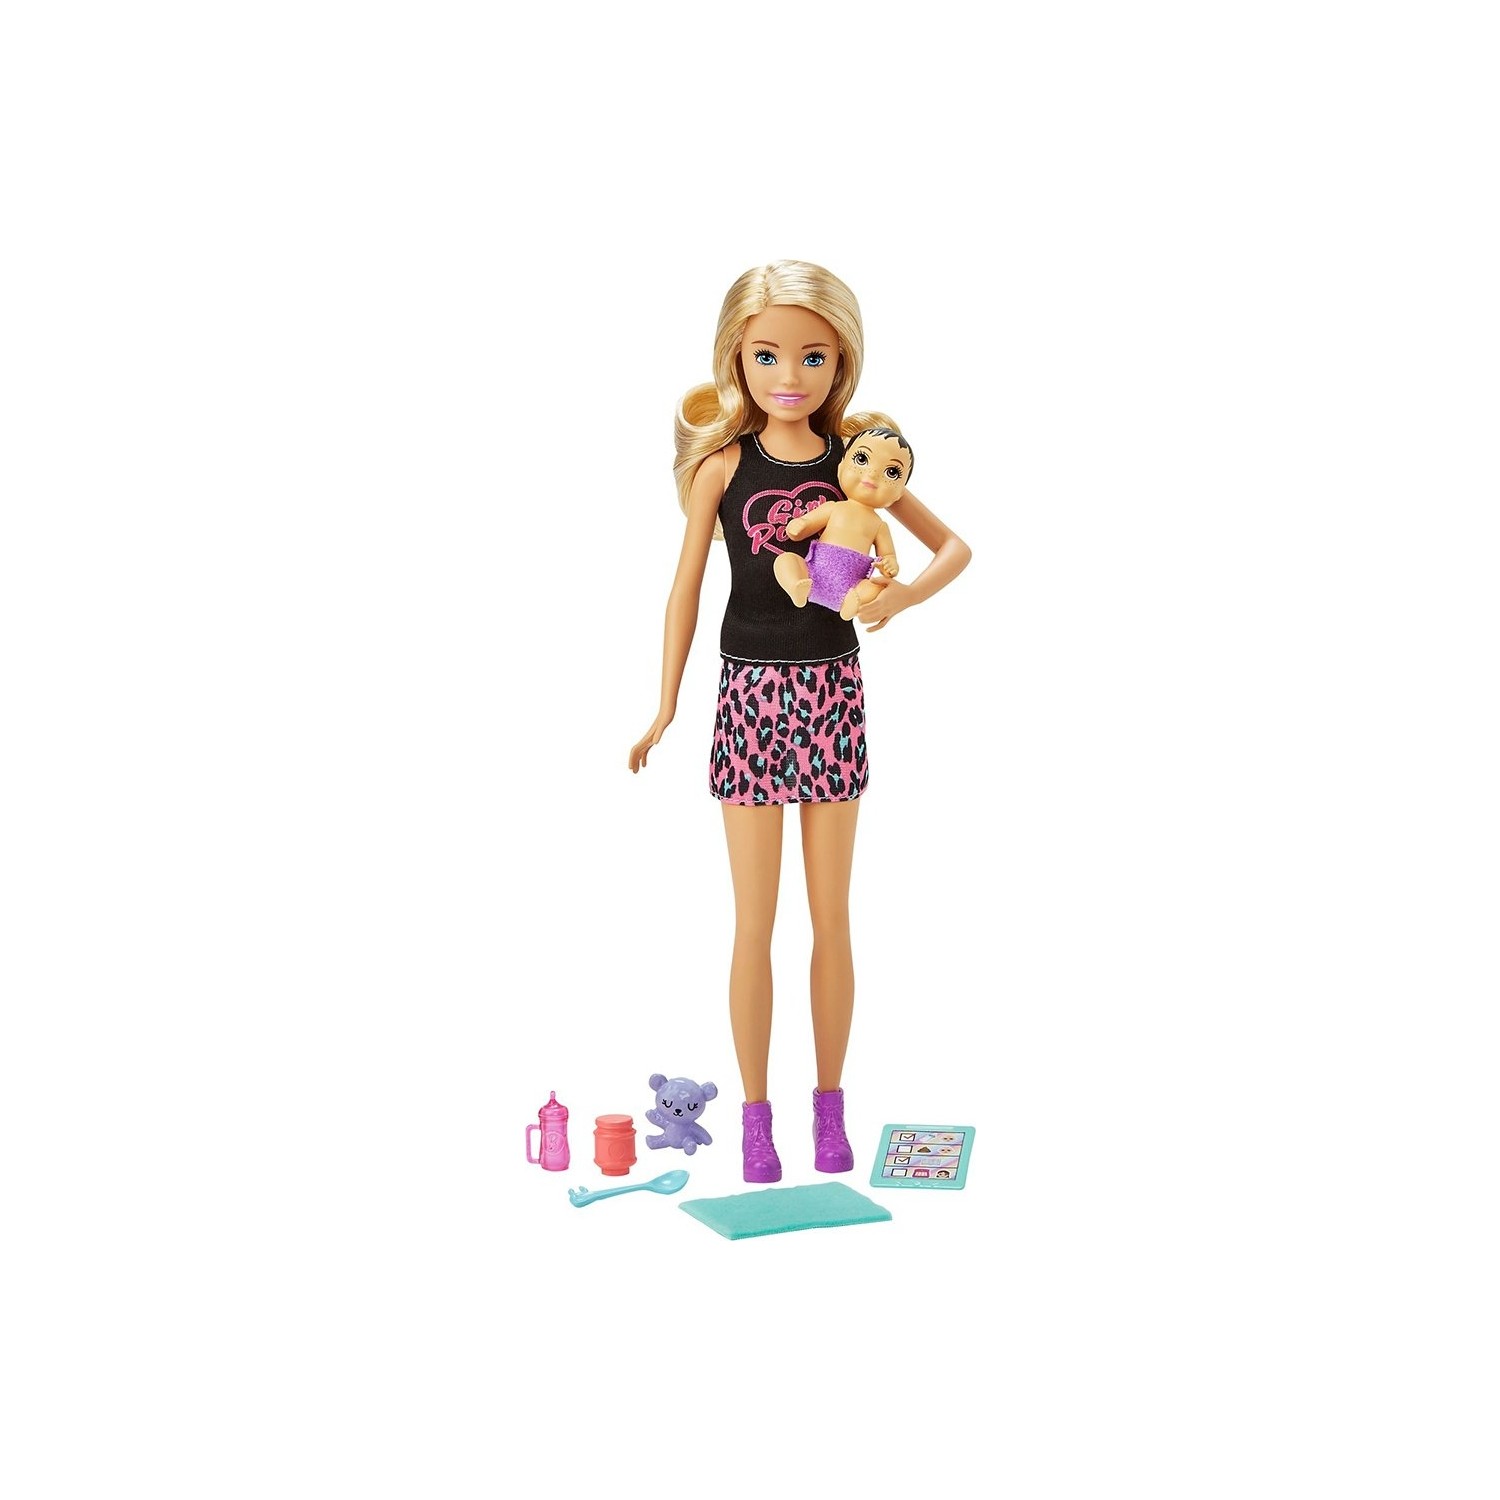 Игровой набор с куклой Barbie и аксессуарами GRP10 игровой набор с барби и аксессуарами кукла барби для девочки барби со съемными нарядами кукла набор аксессуаров для барби